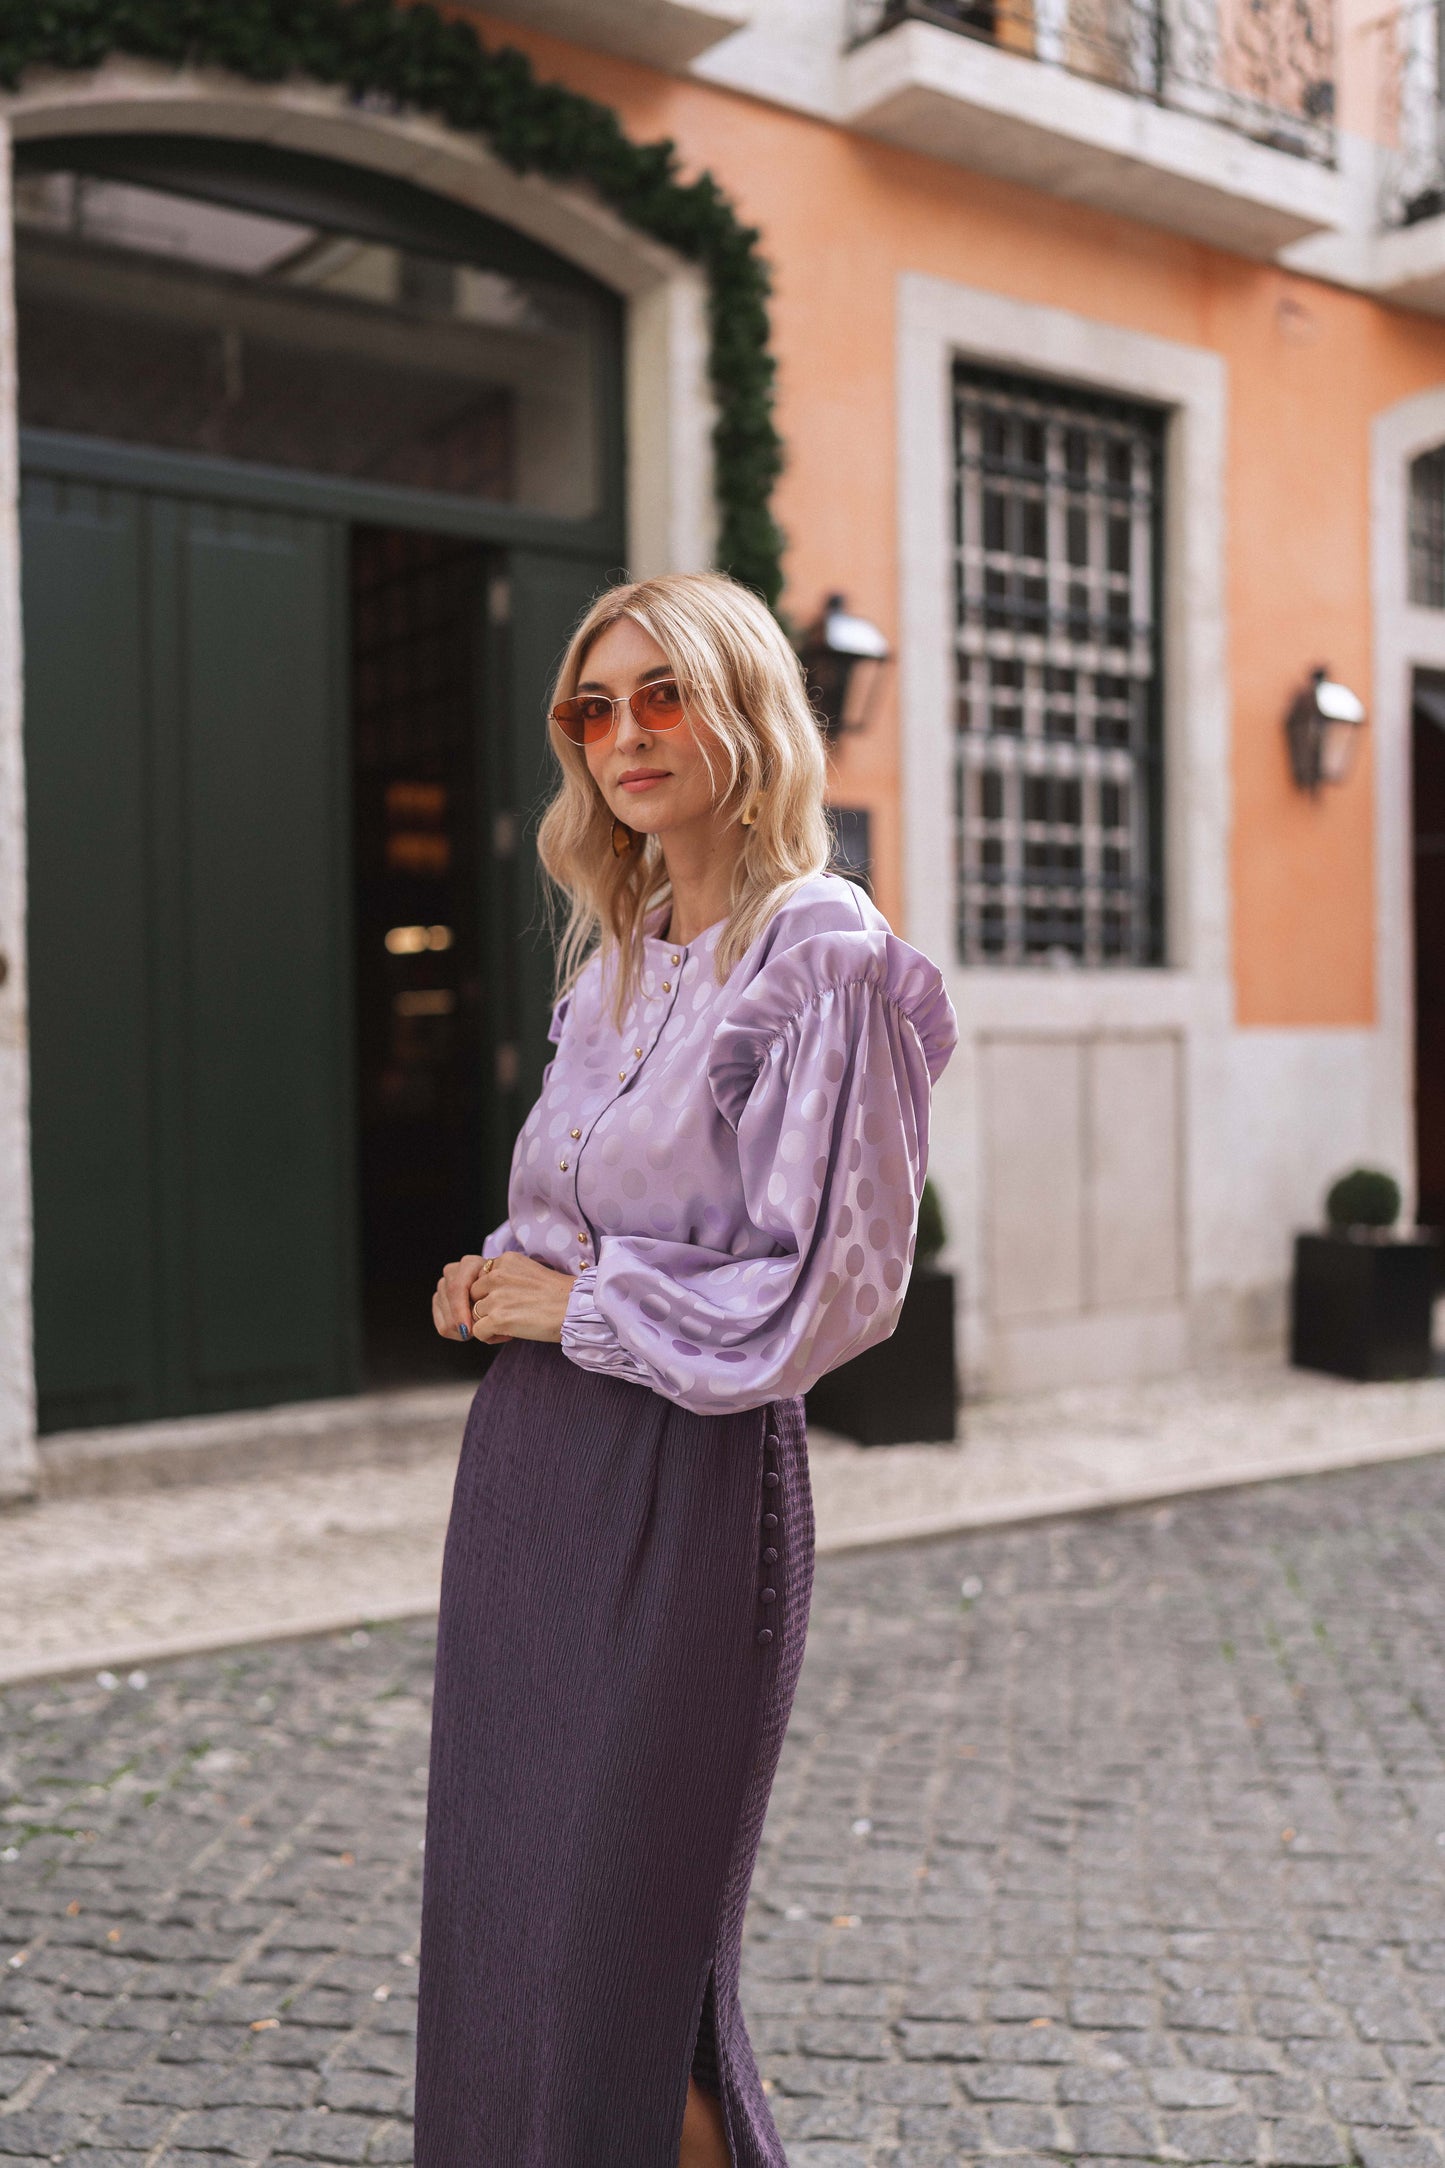 Tuesday Lavender Skirt